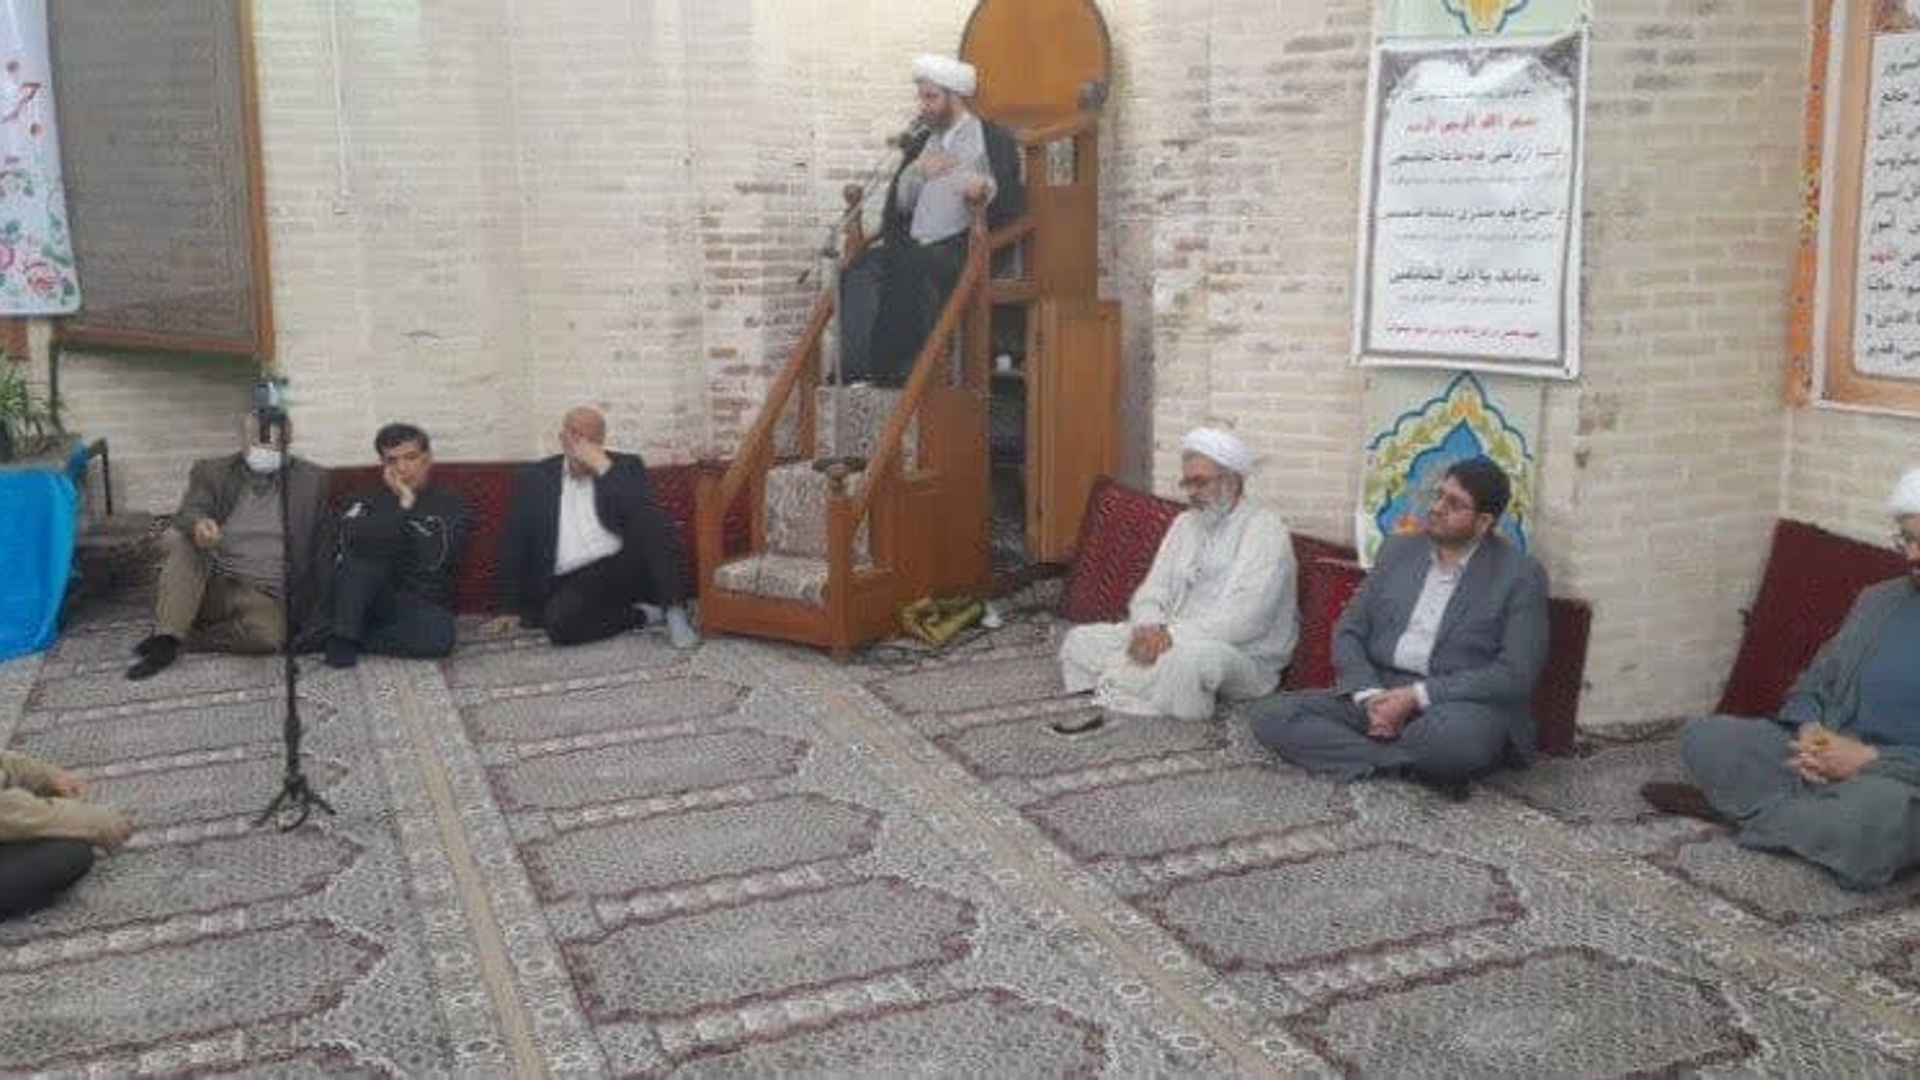 برگزاری نماز جماعت و سخنرانی در مسجد شش ناو به امامت حجت الاسلام سعیدی آریا